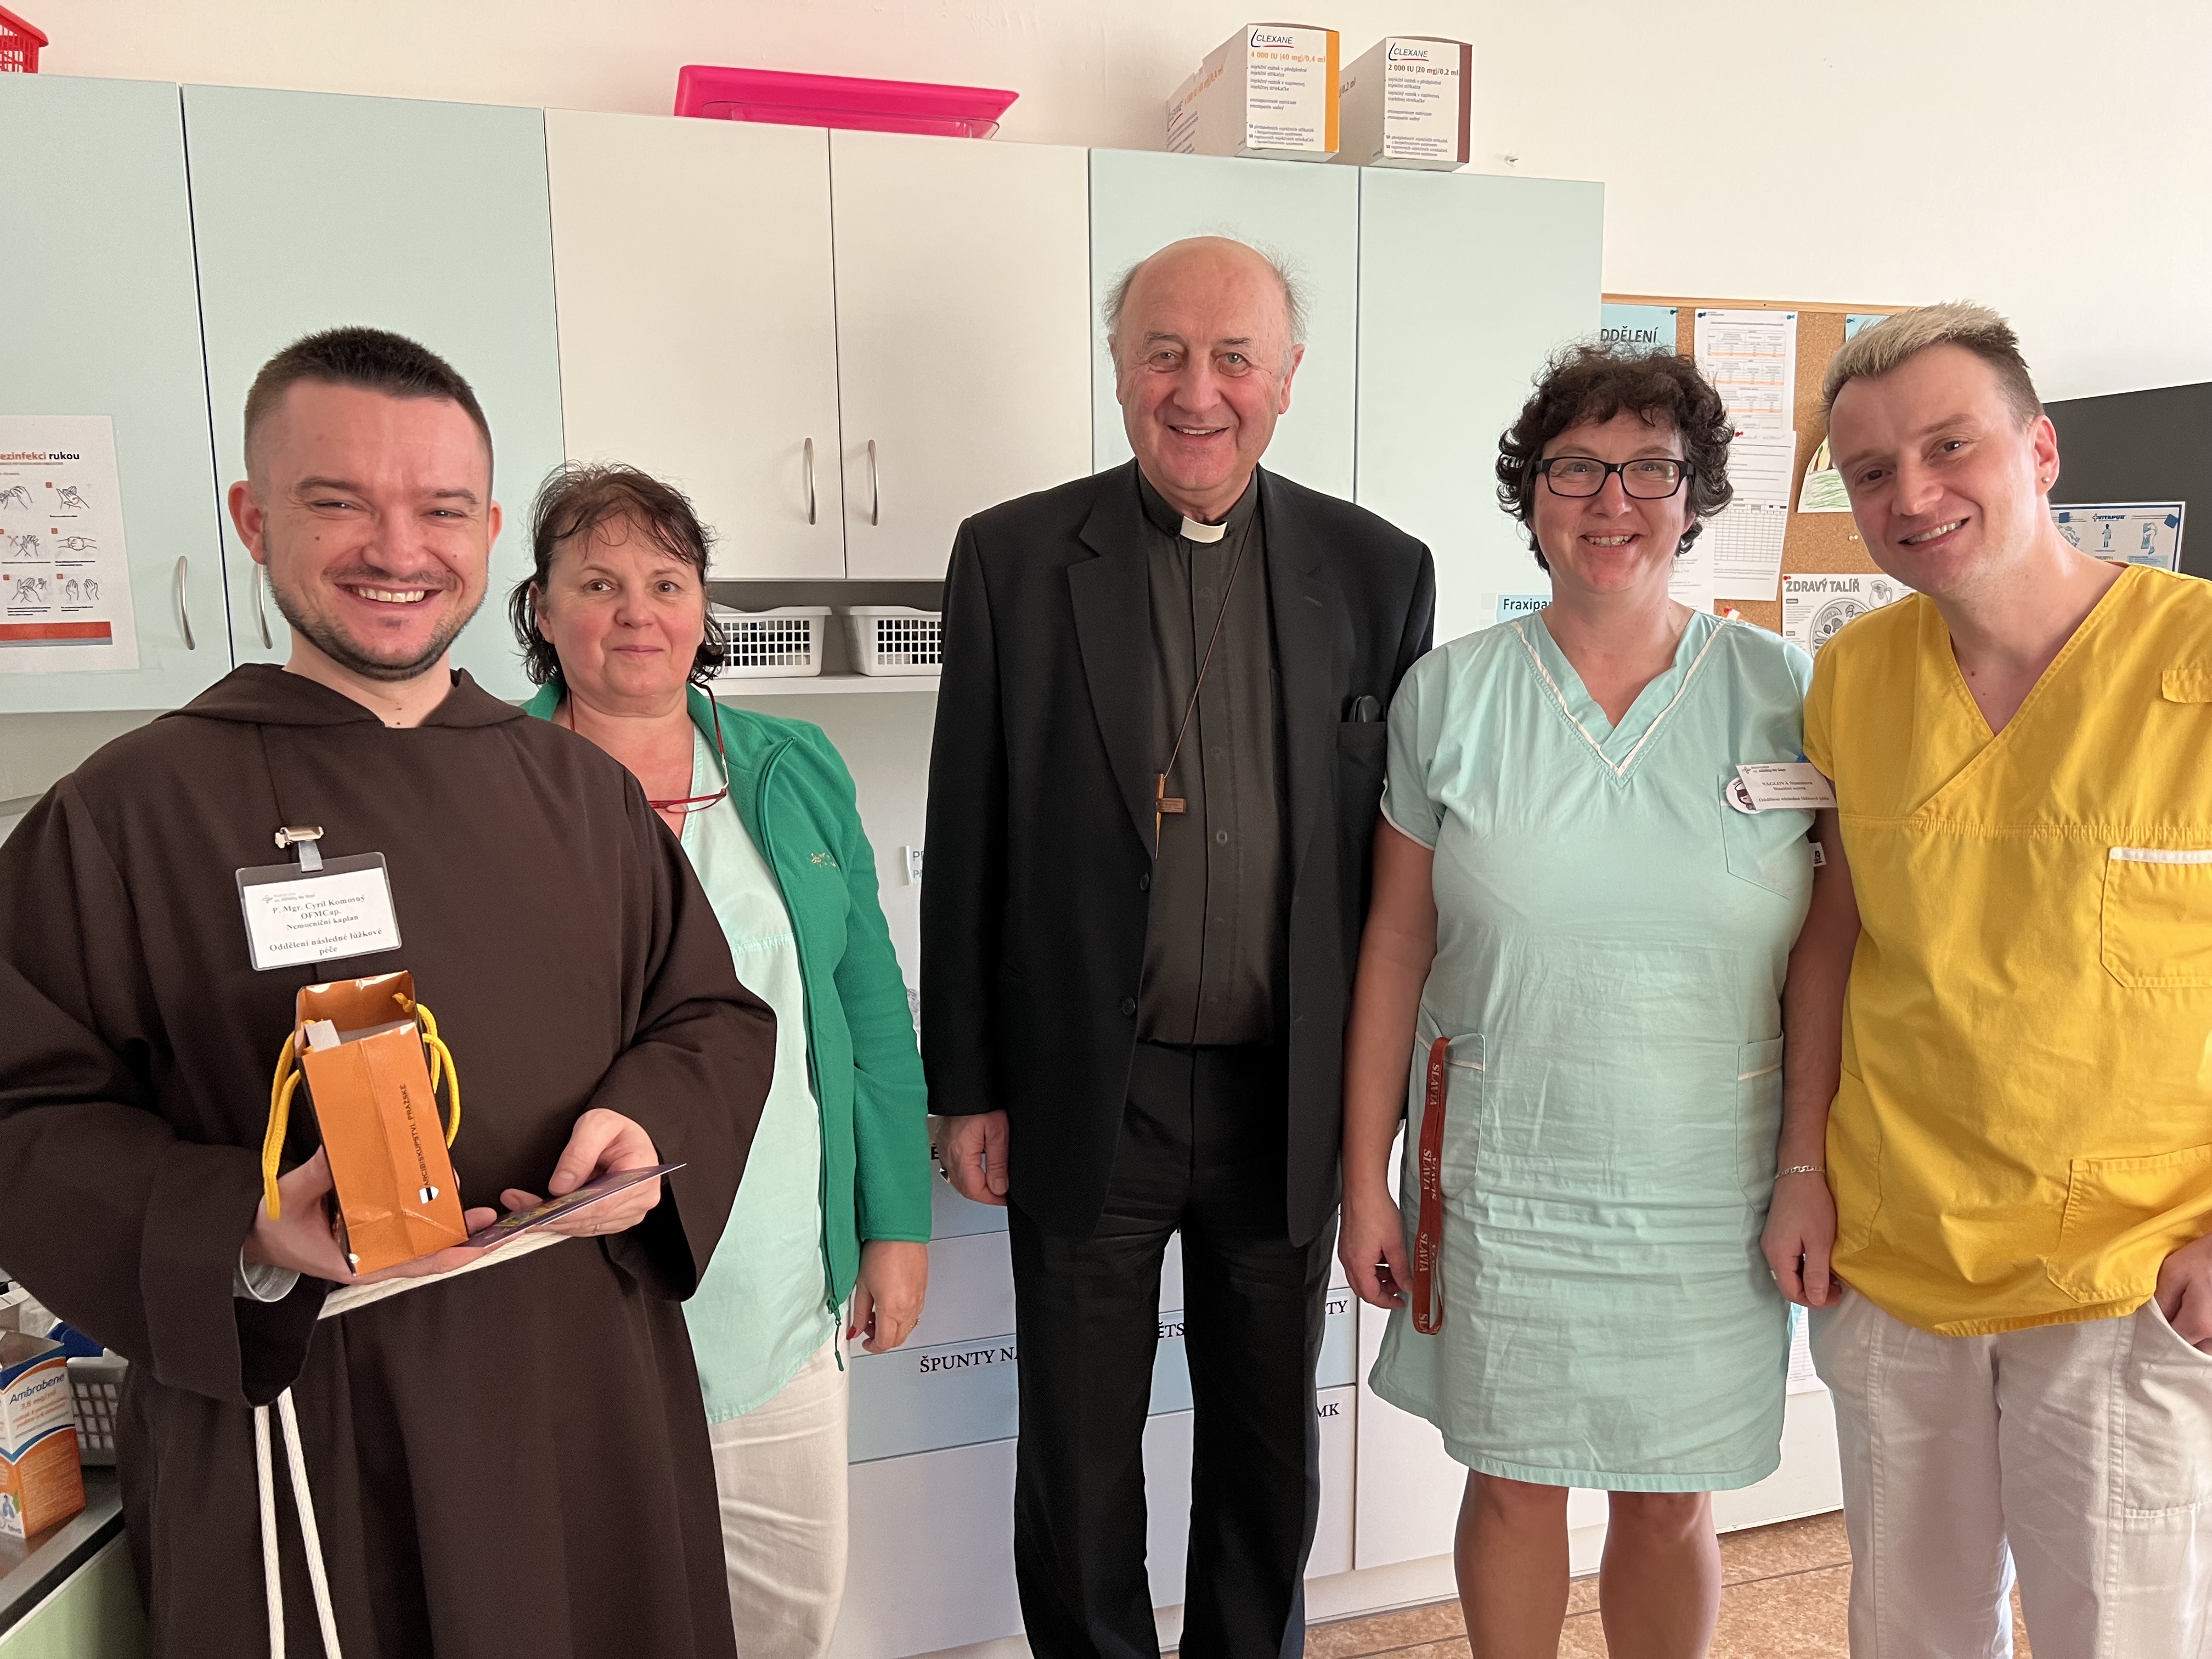 Pražský arcibiskup Jan Graubner navštívil církevní nemocnici v Praze